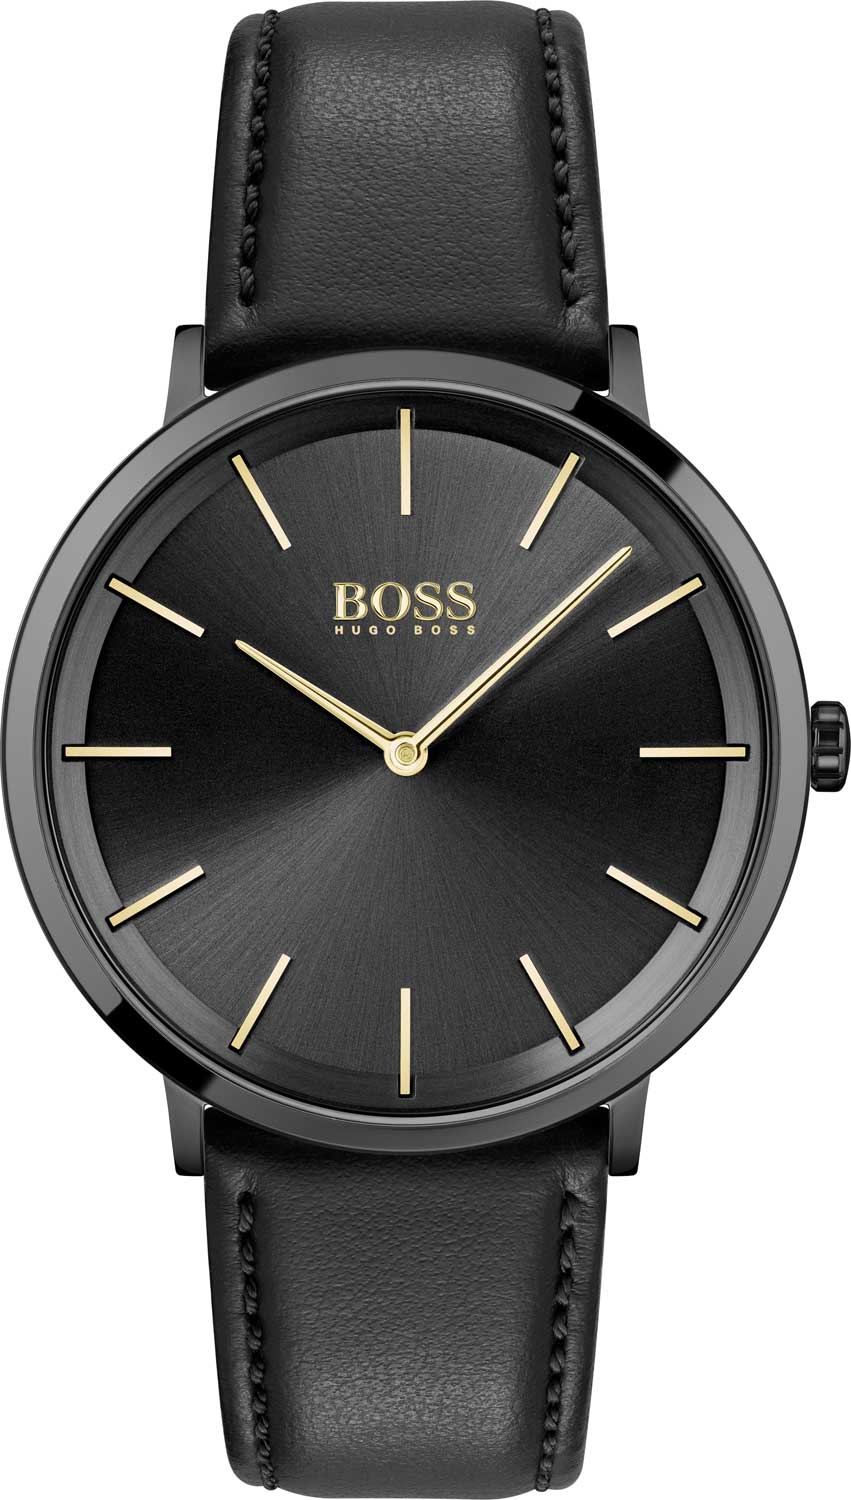   Hugo Boss HB1513830